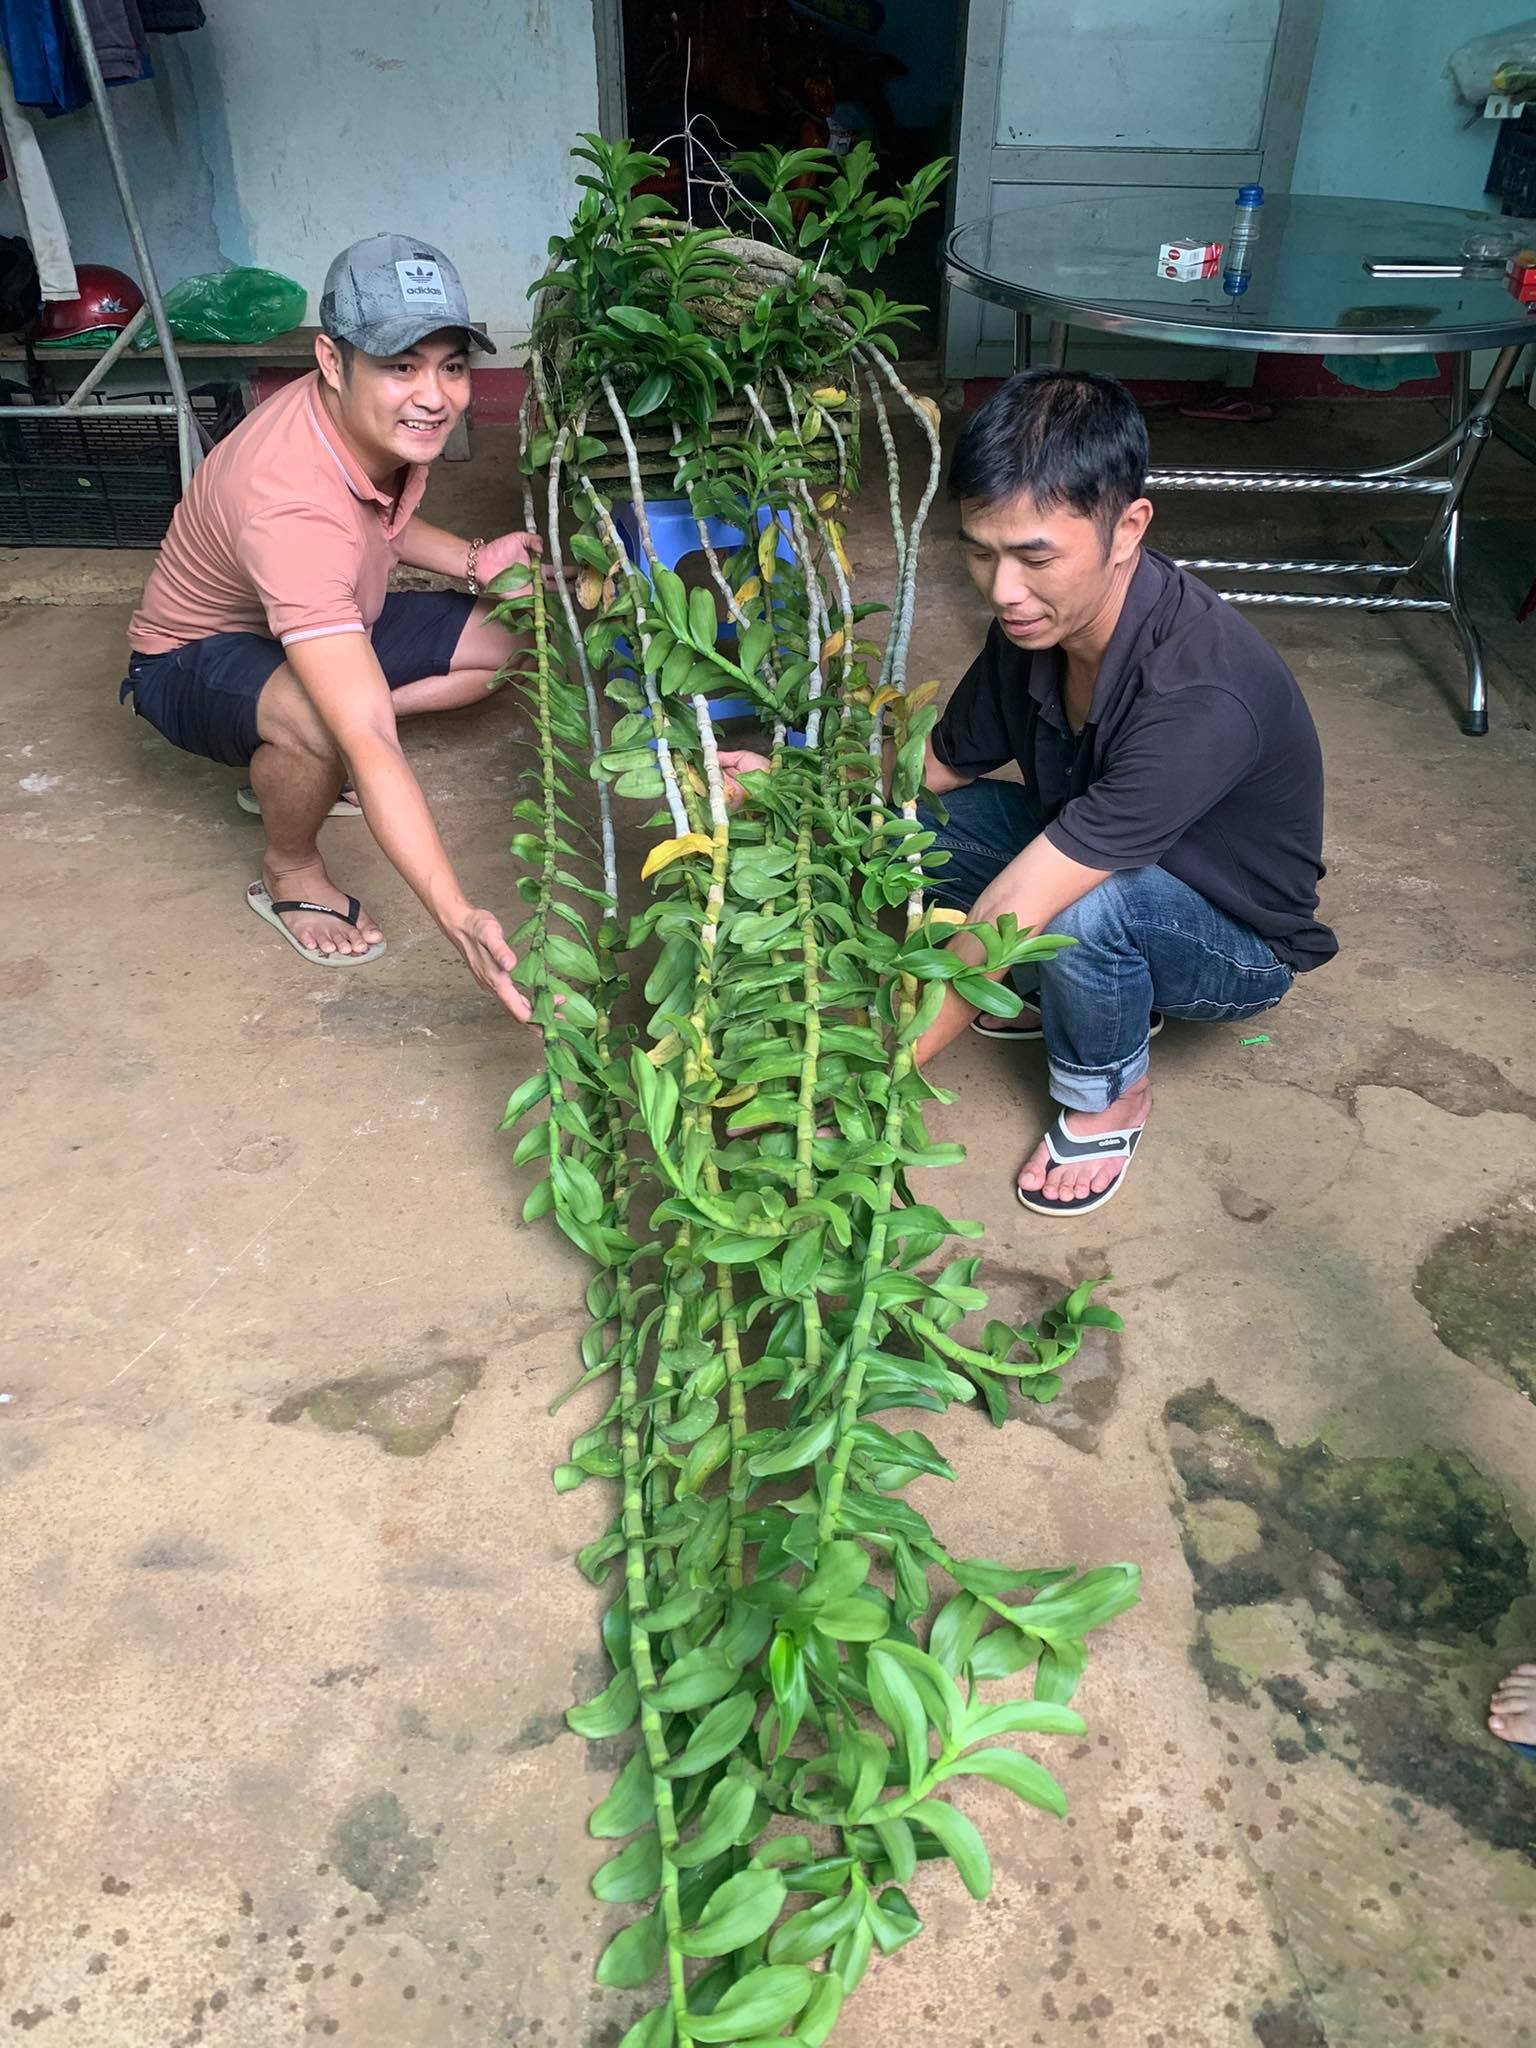 Nguyễn Ngọc Khánh – Hoa lan rừng một nghề kinh doanh mới được ra đời !